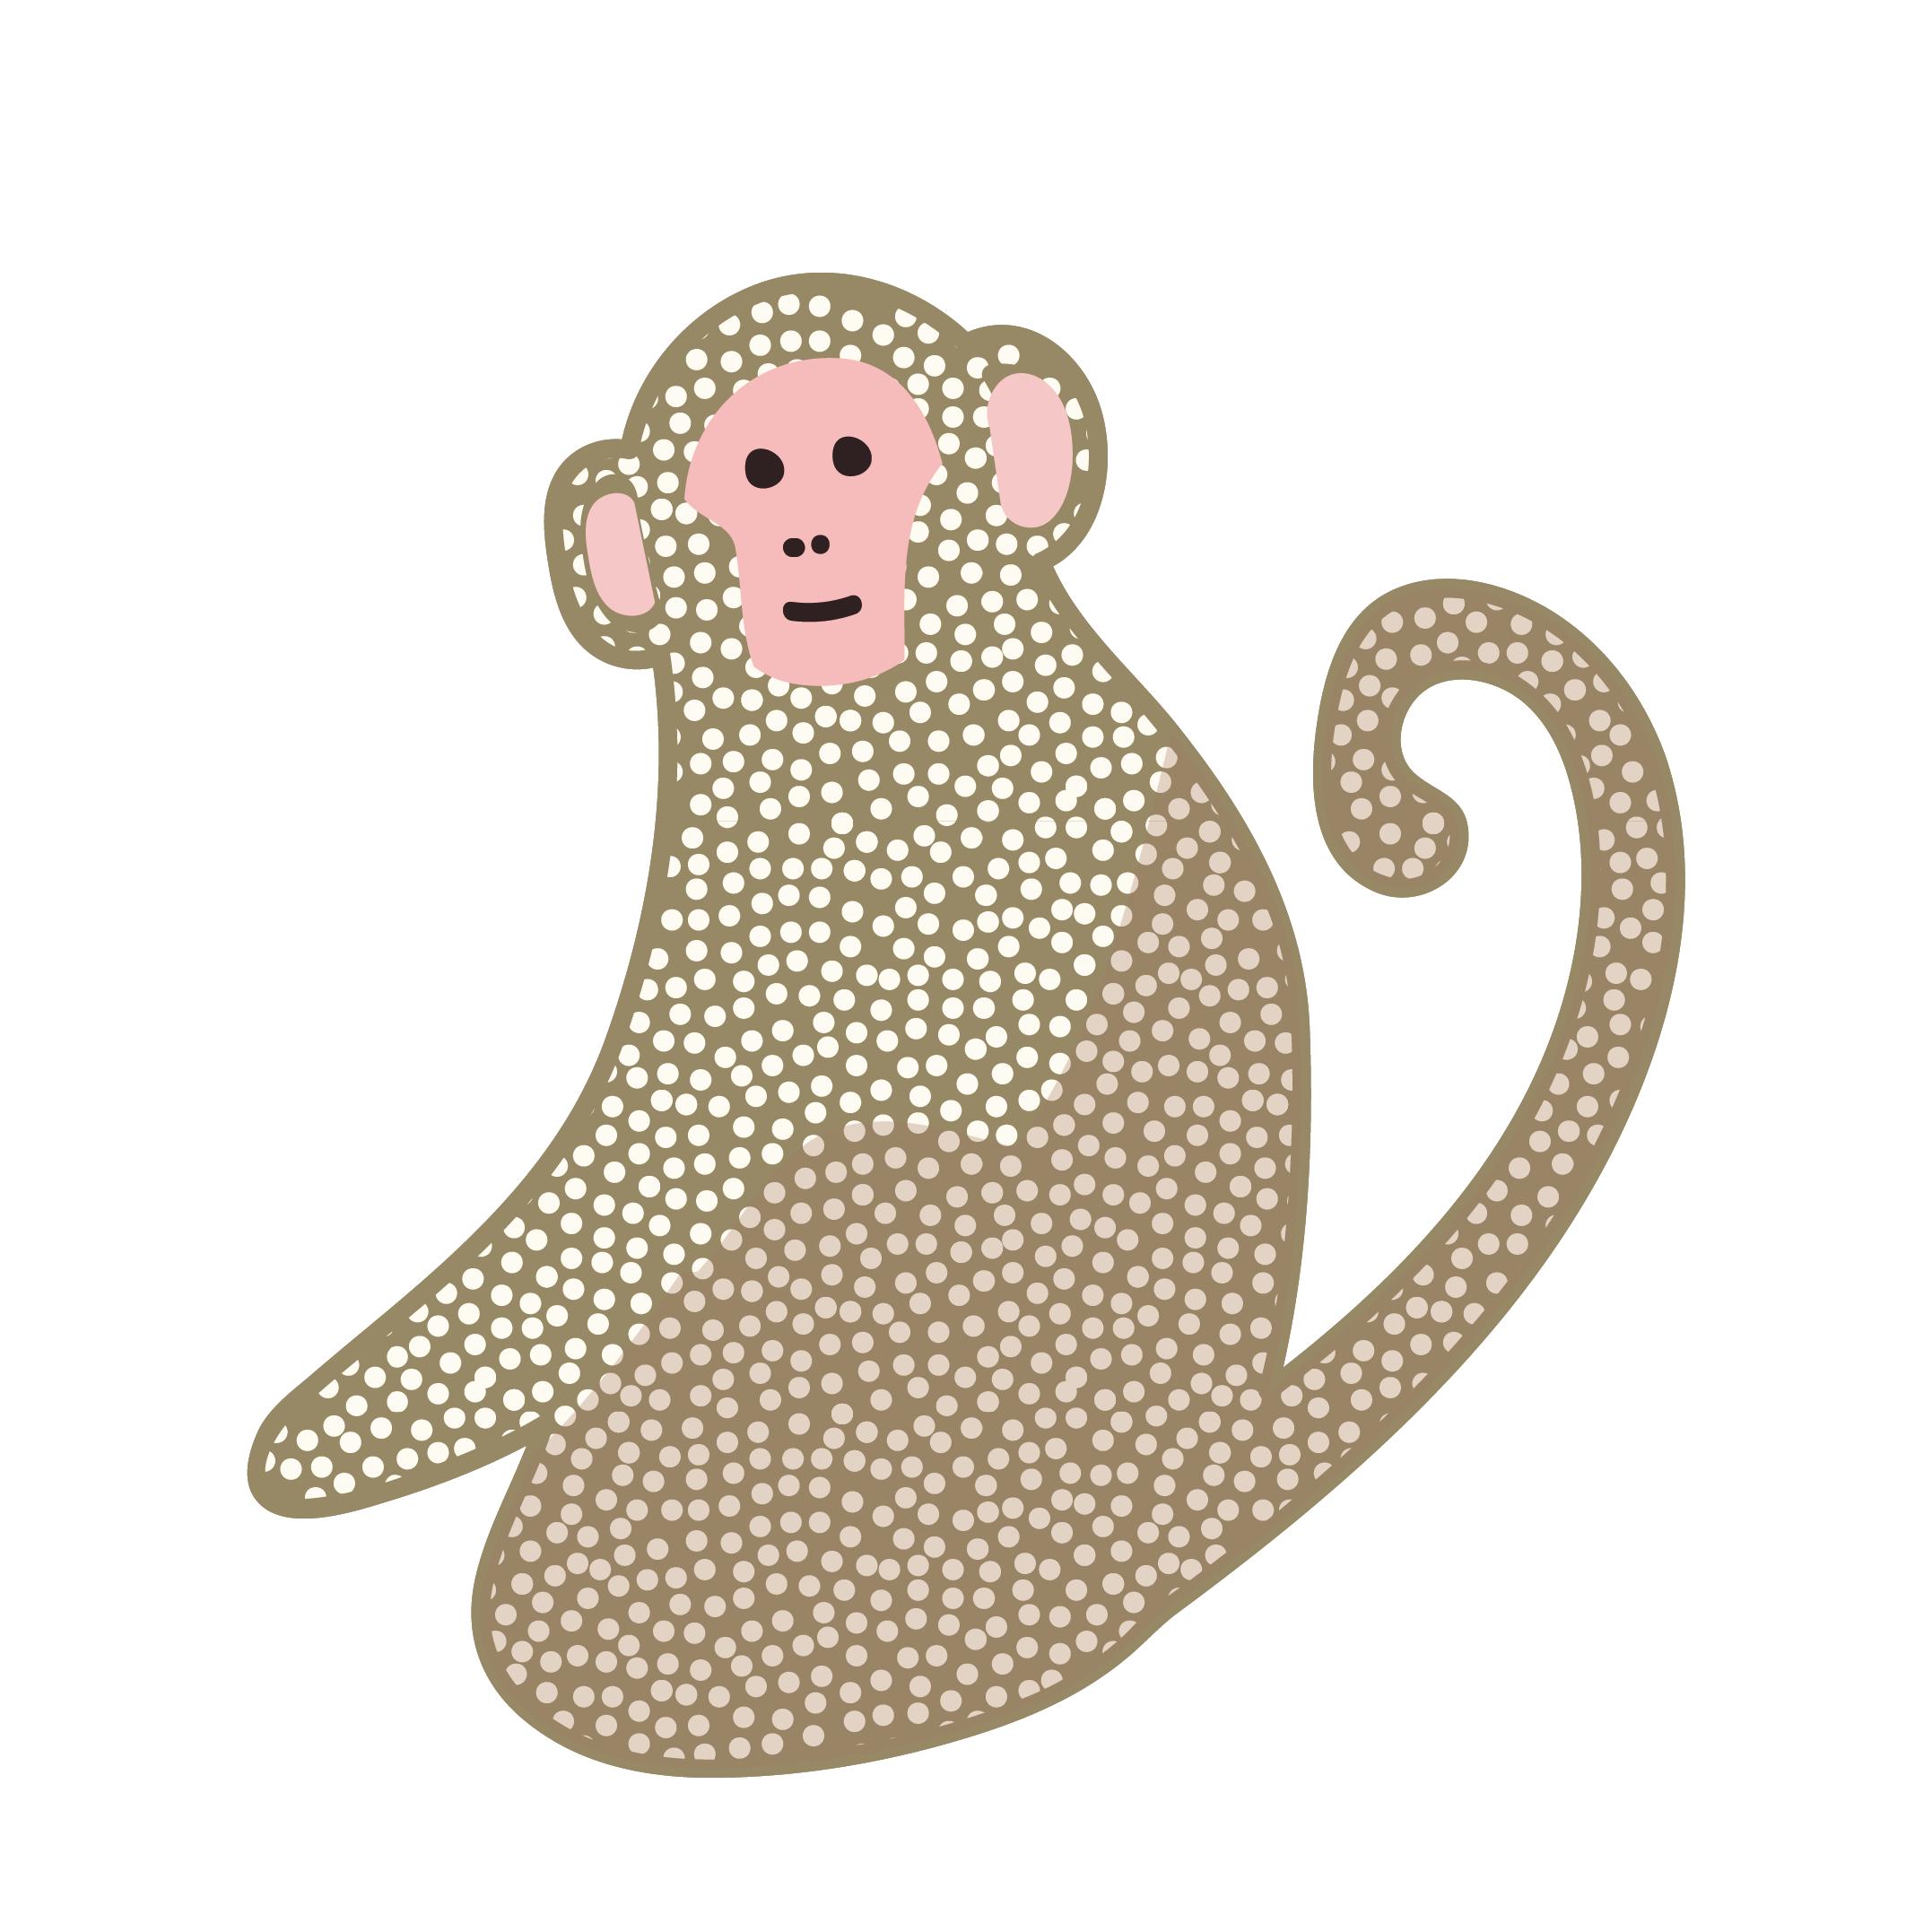 おしゃれでかわいい♪猿（サル・モンキー）のイラスト【動物】 商用フリー(無料)のイラスト素材なら「イラストマンション」